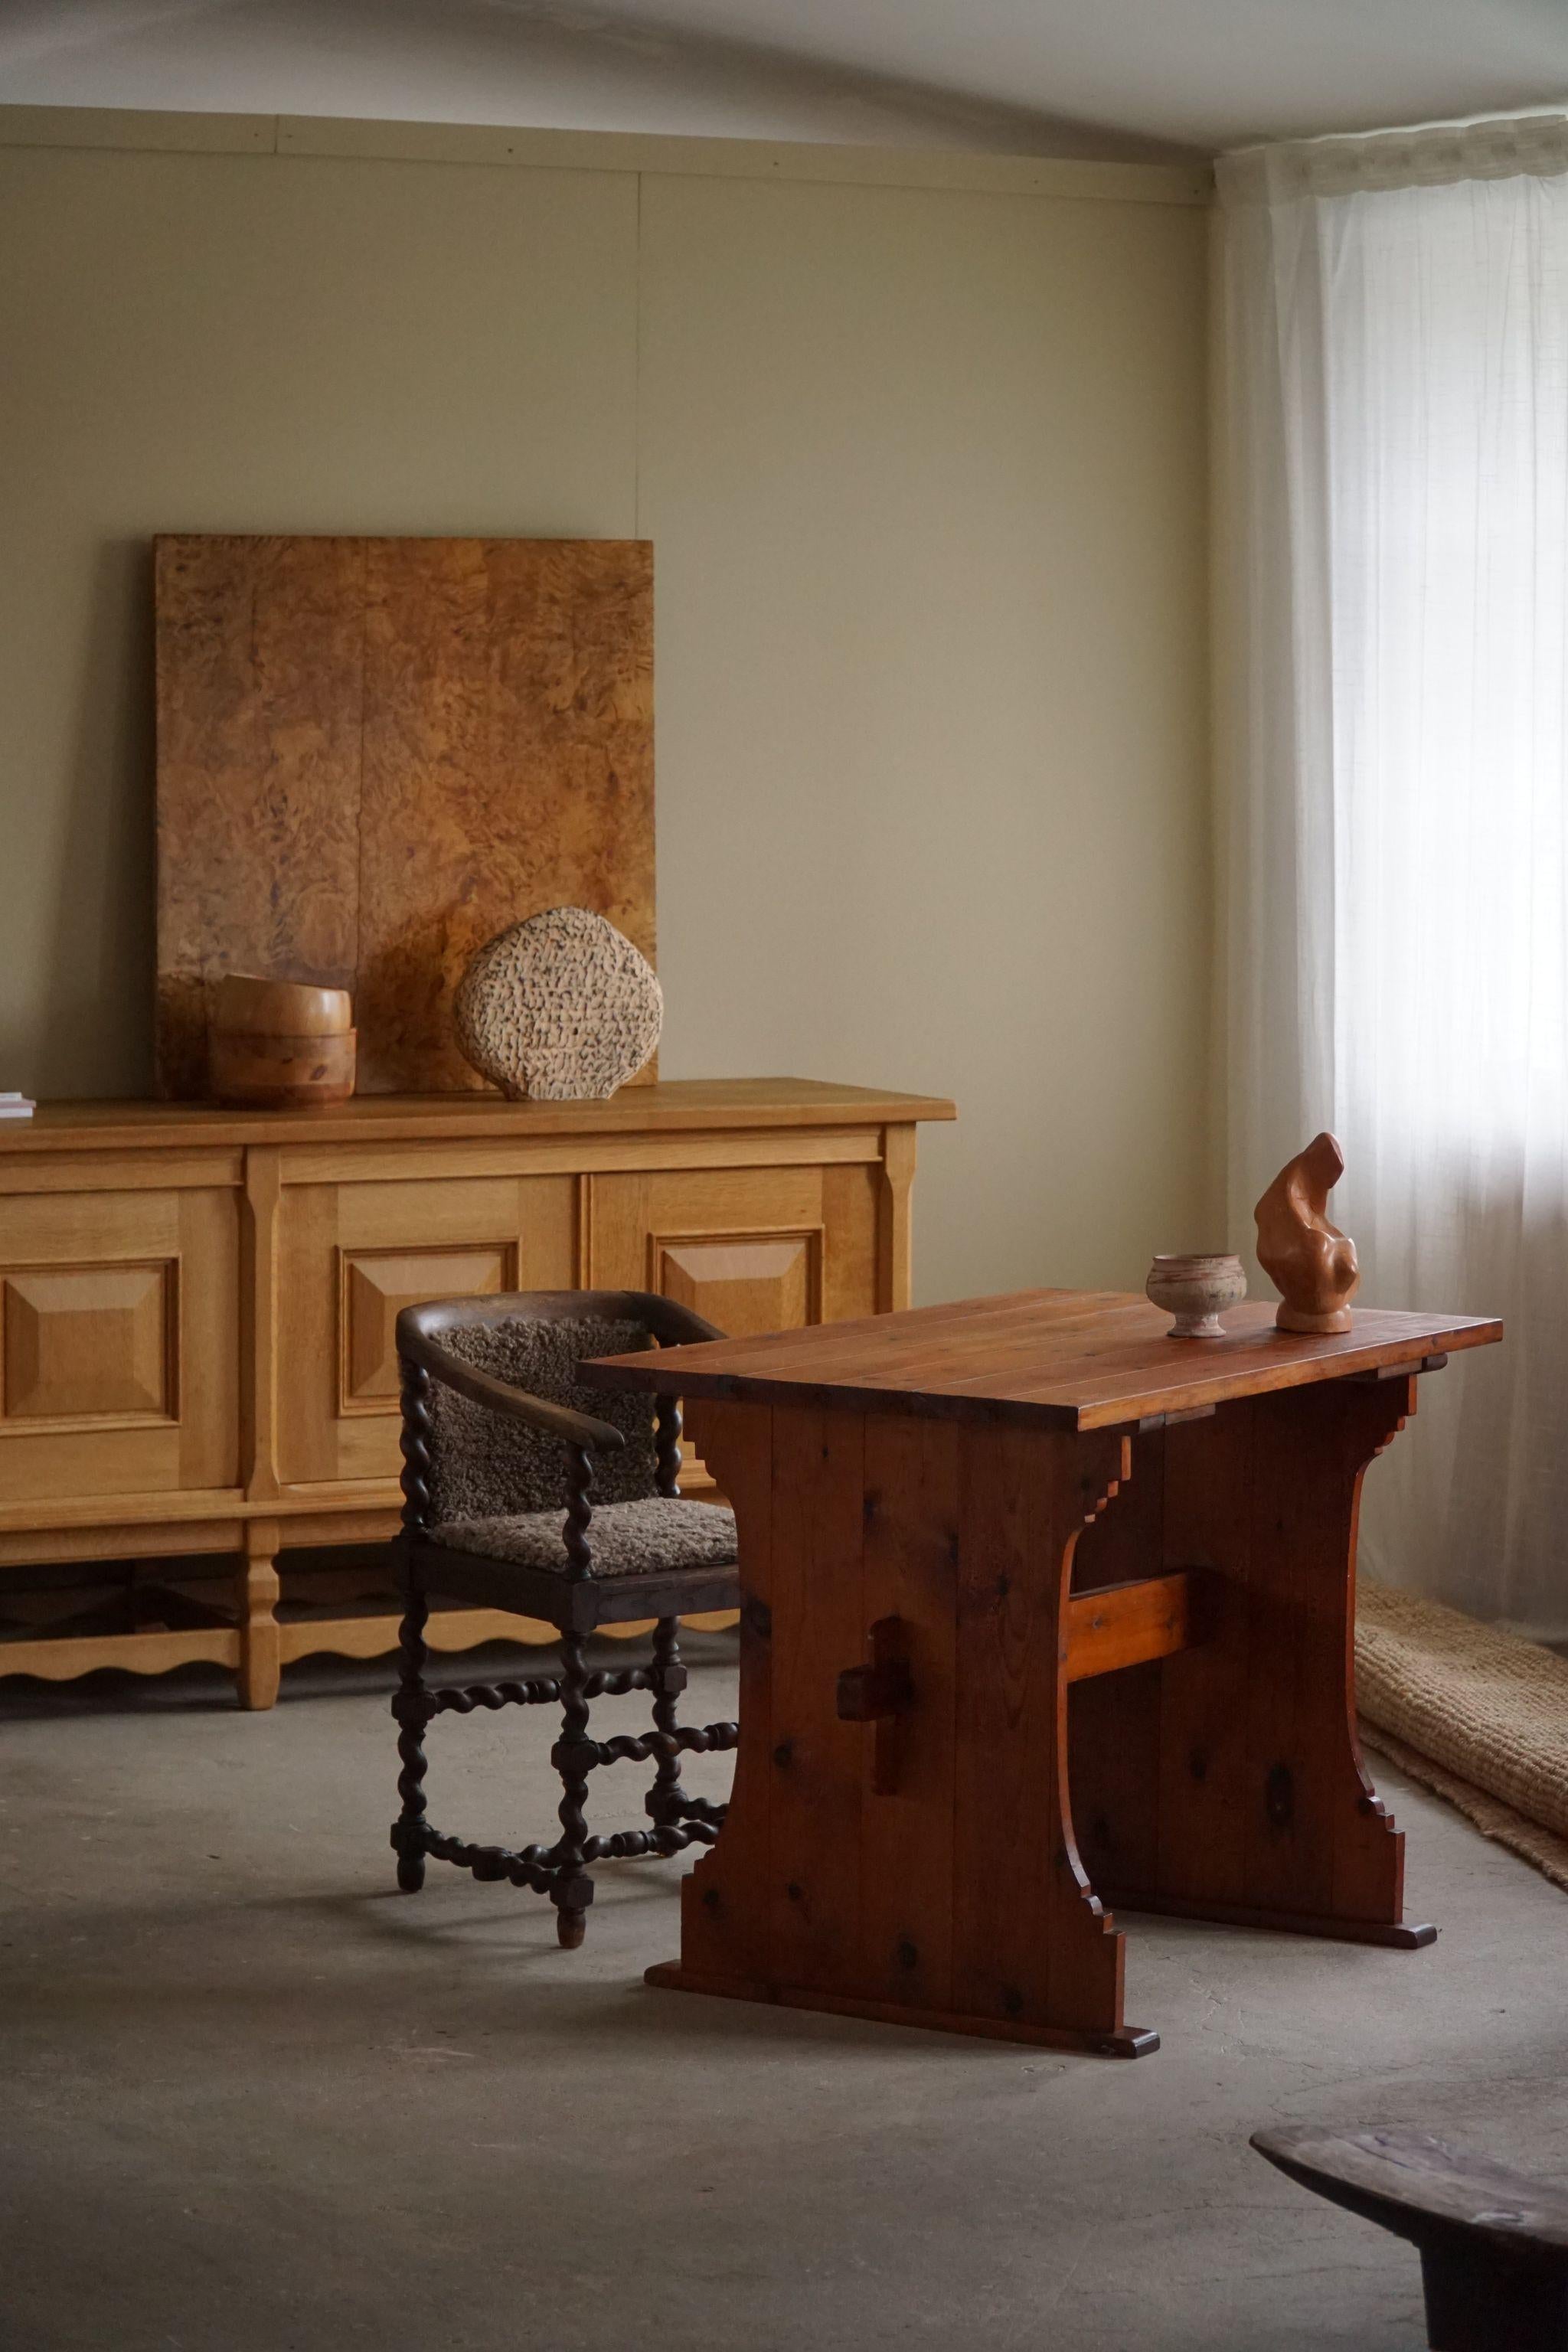 Un charmant bureau en pin, fabriqué par un ébéniste suédois dans les années 1940. Le grain naturel du pin ajoute de la chaleur et du caractère au bureau, soulignant son attrait authentique et usé par le temps.
Similaire à la série Lovö conçue par